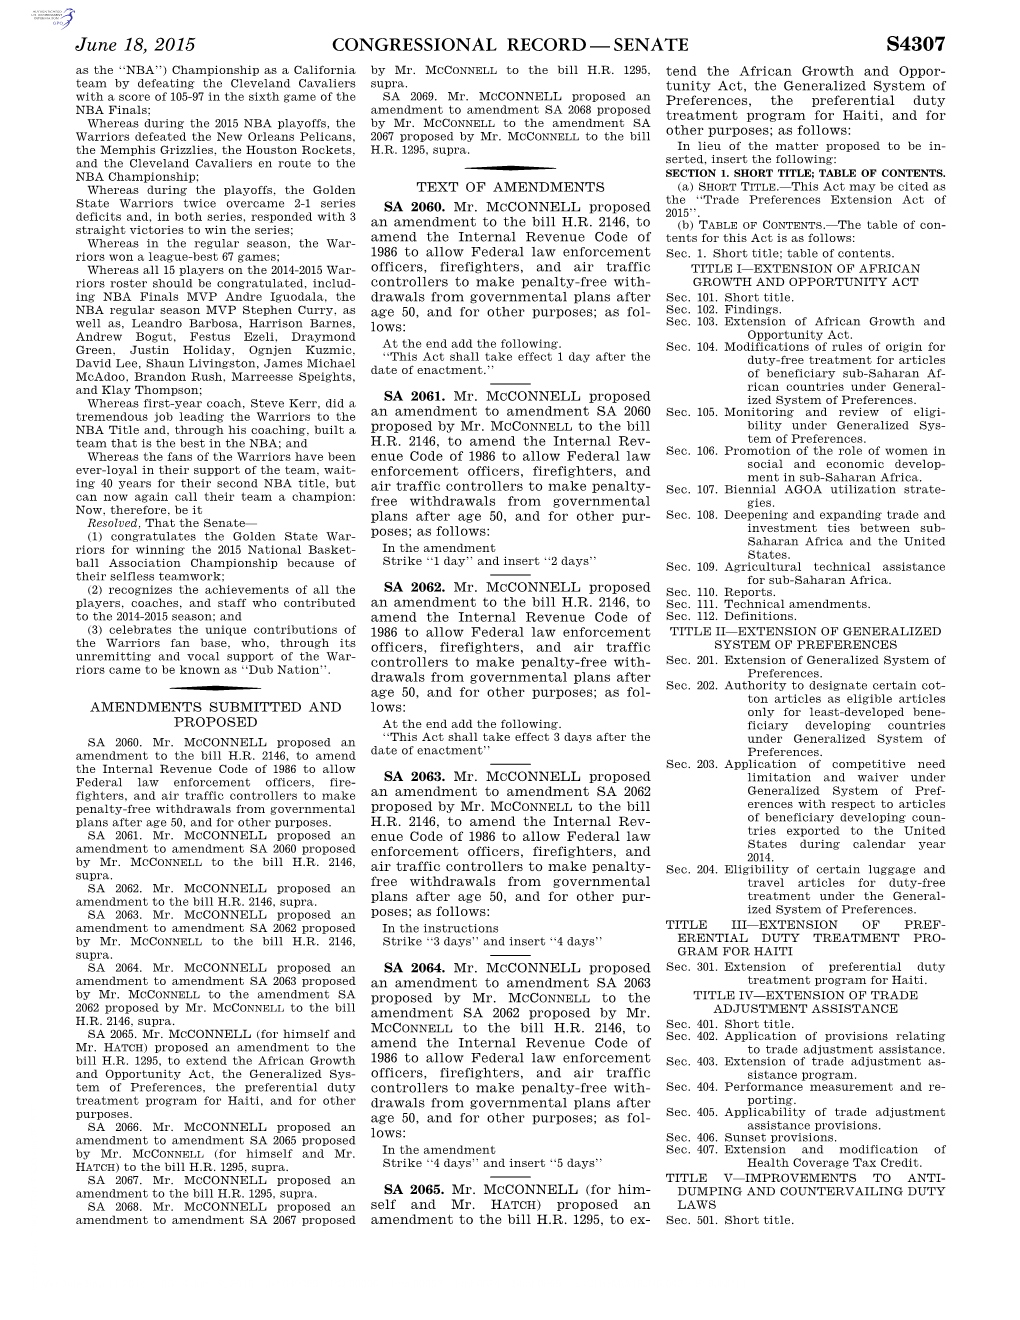 Congressional Record—Senate S4307